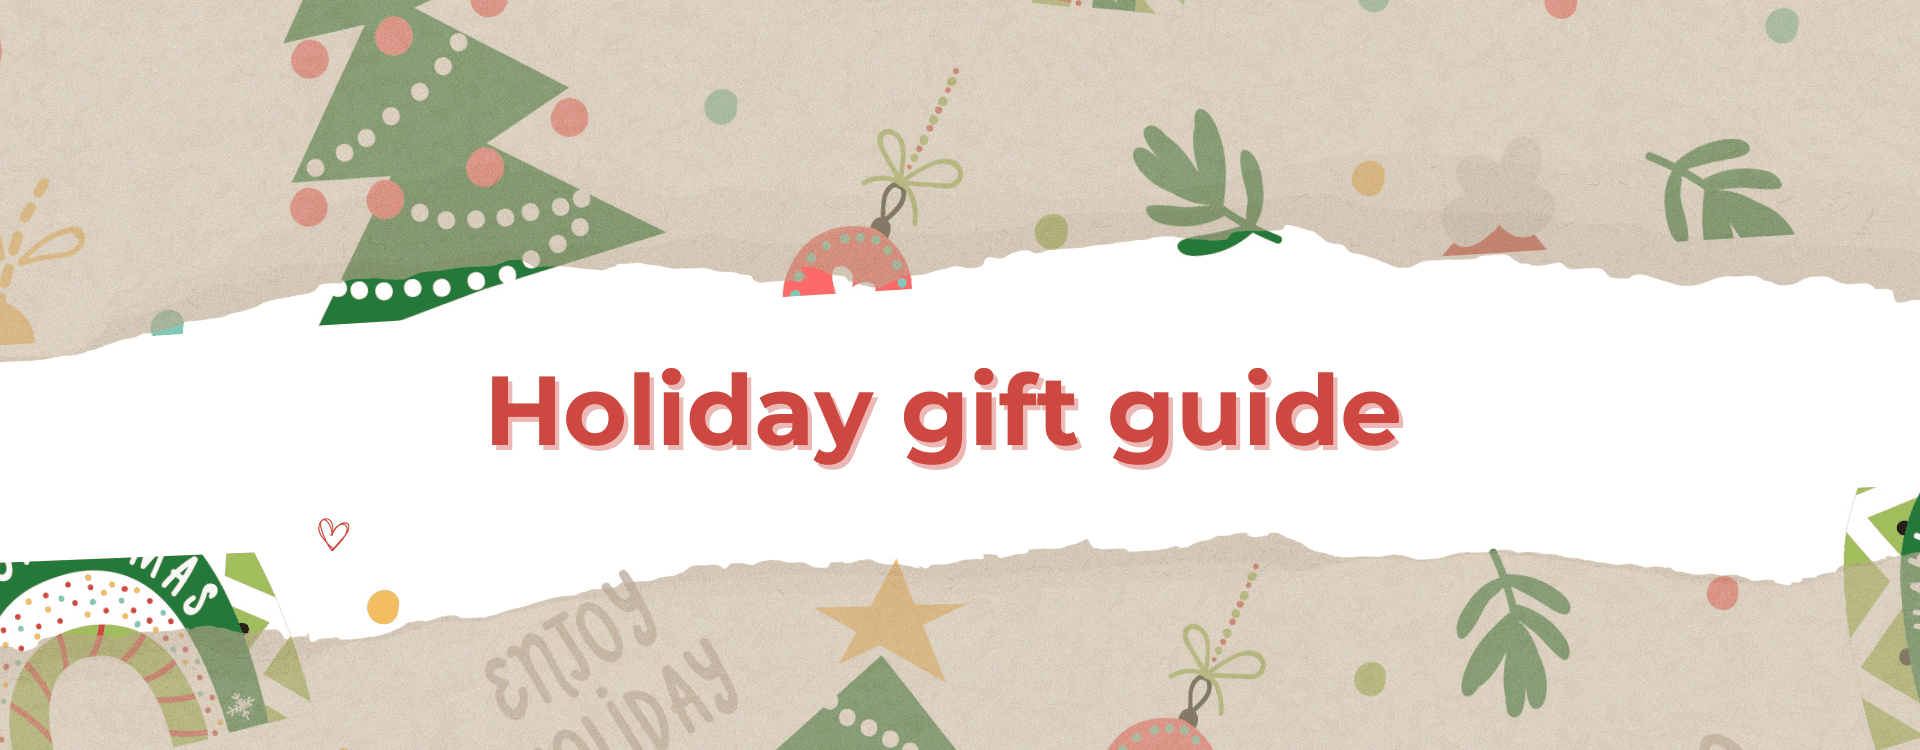 Holiday gift guide 1 Водич за празнични подароци